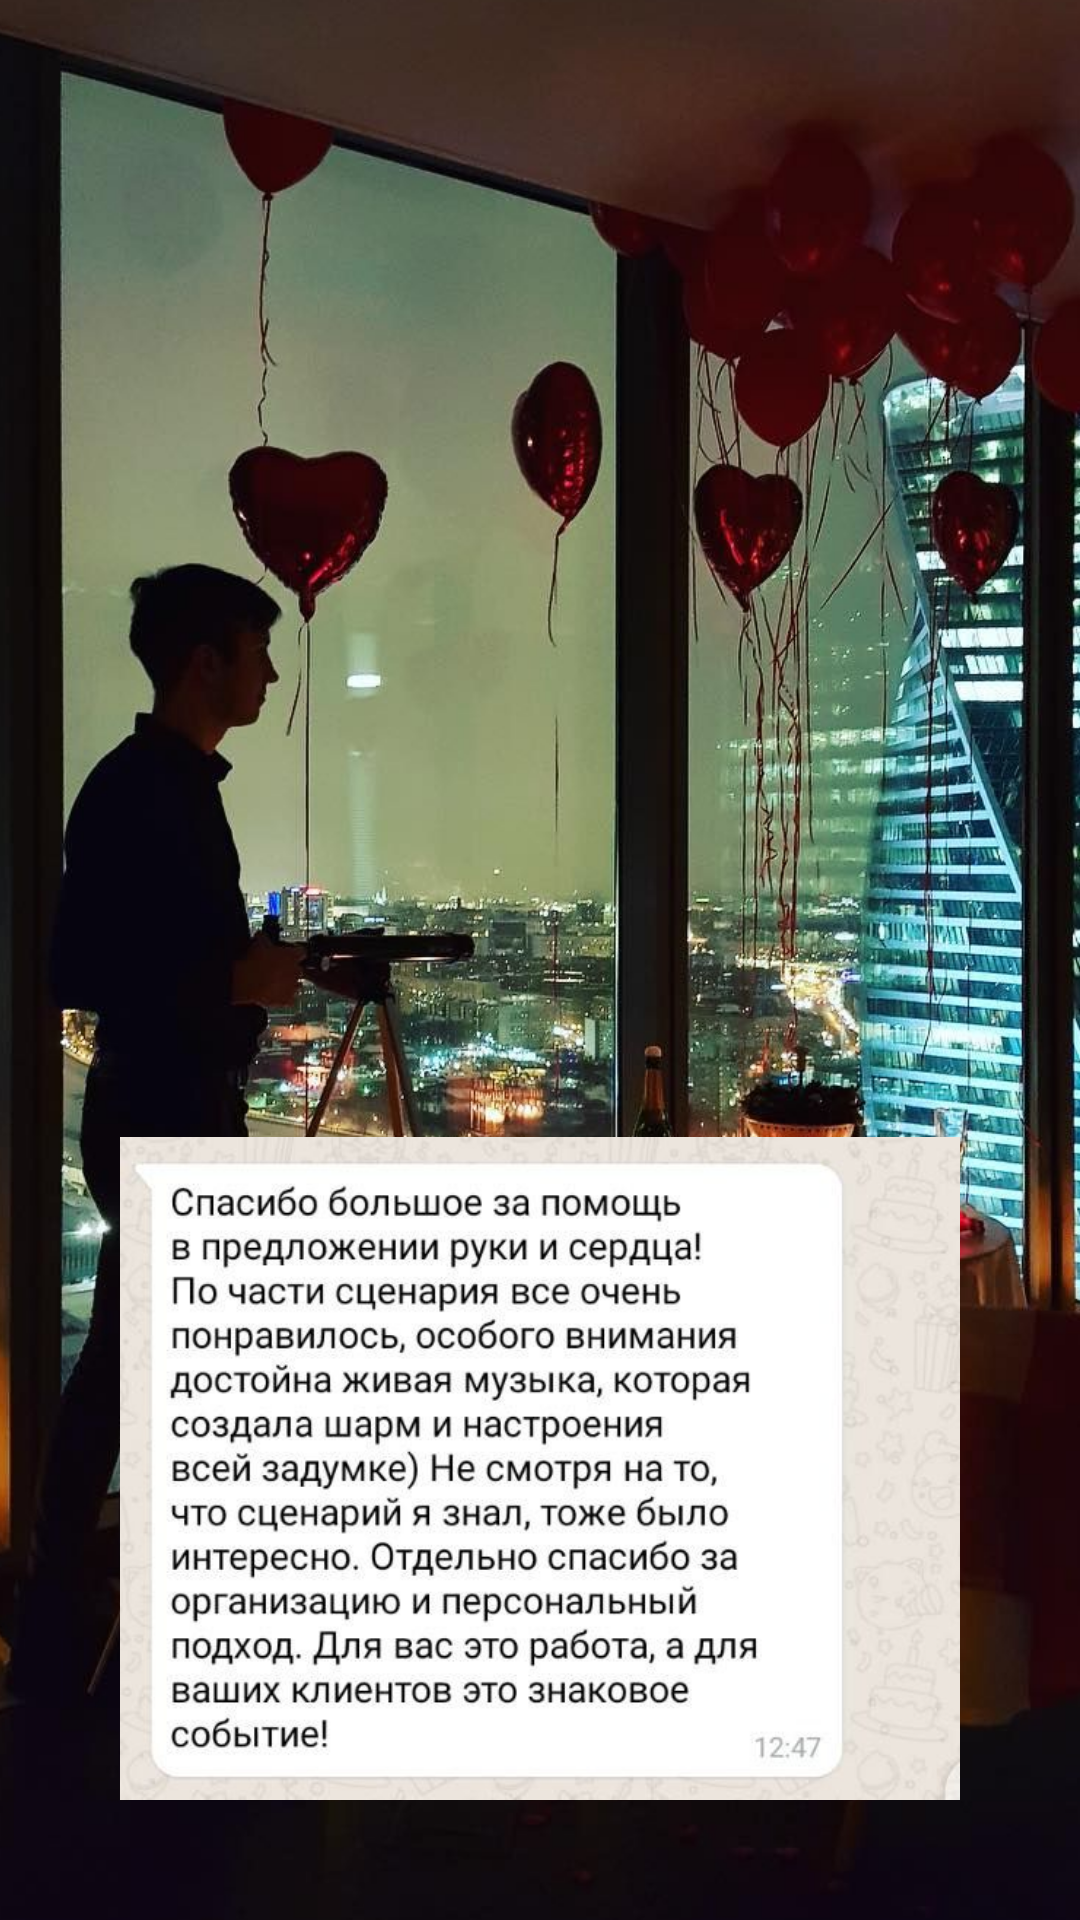 Организация предложения руки и сердца в Нижнем Новгороде
от компании Pandaevent